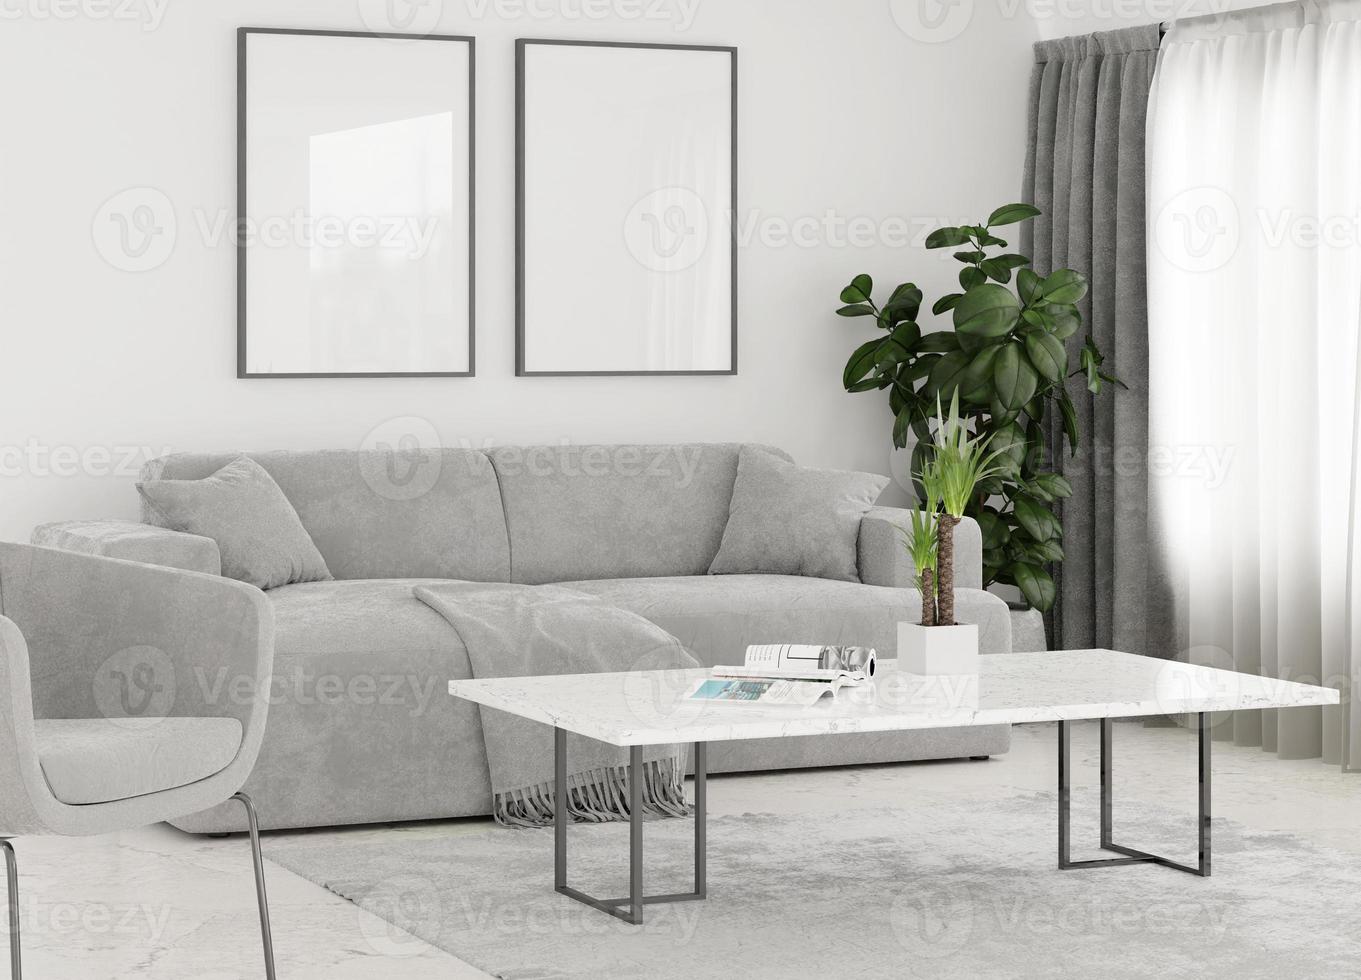 Maquete de foto de moldura de lona em um quarto minimalista com sofá marrom e renderização em 3D de plantas